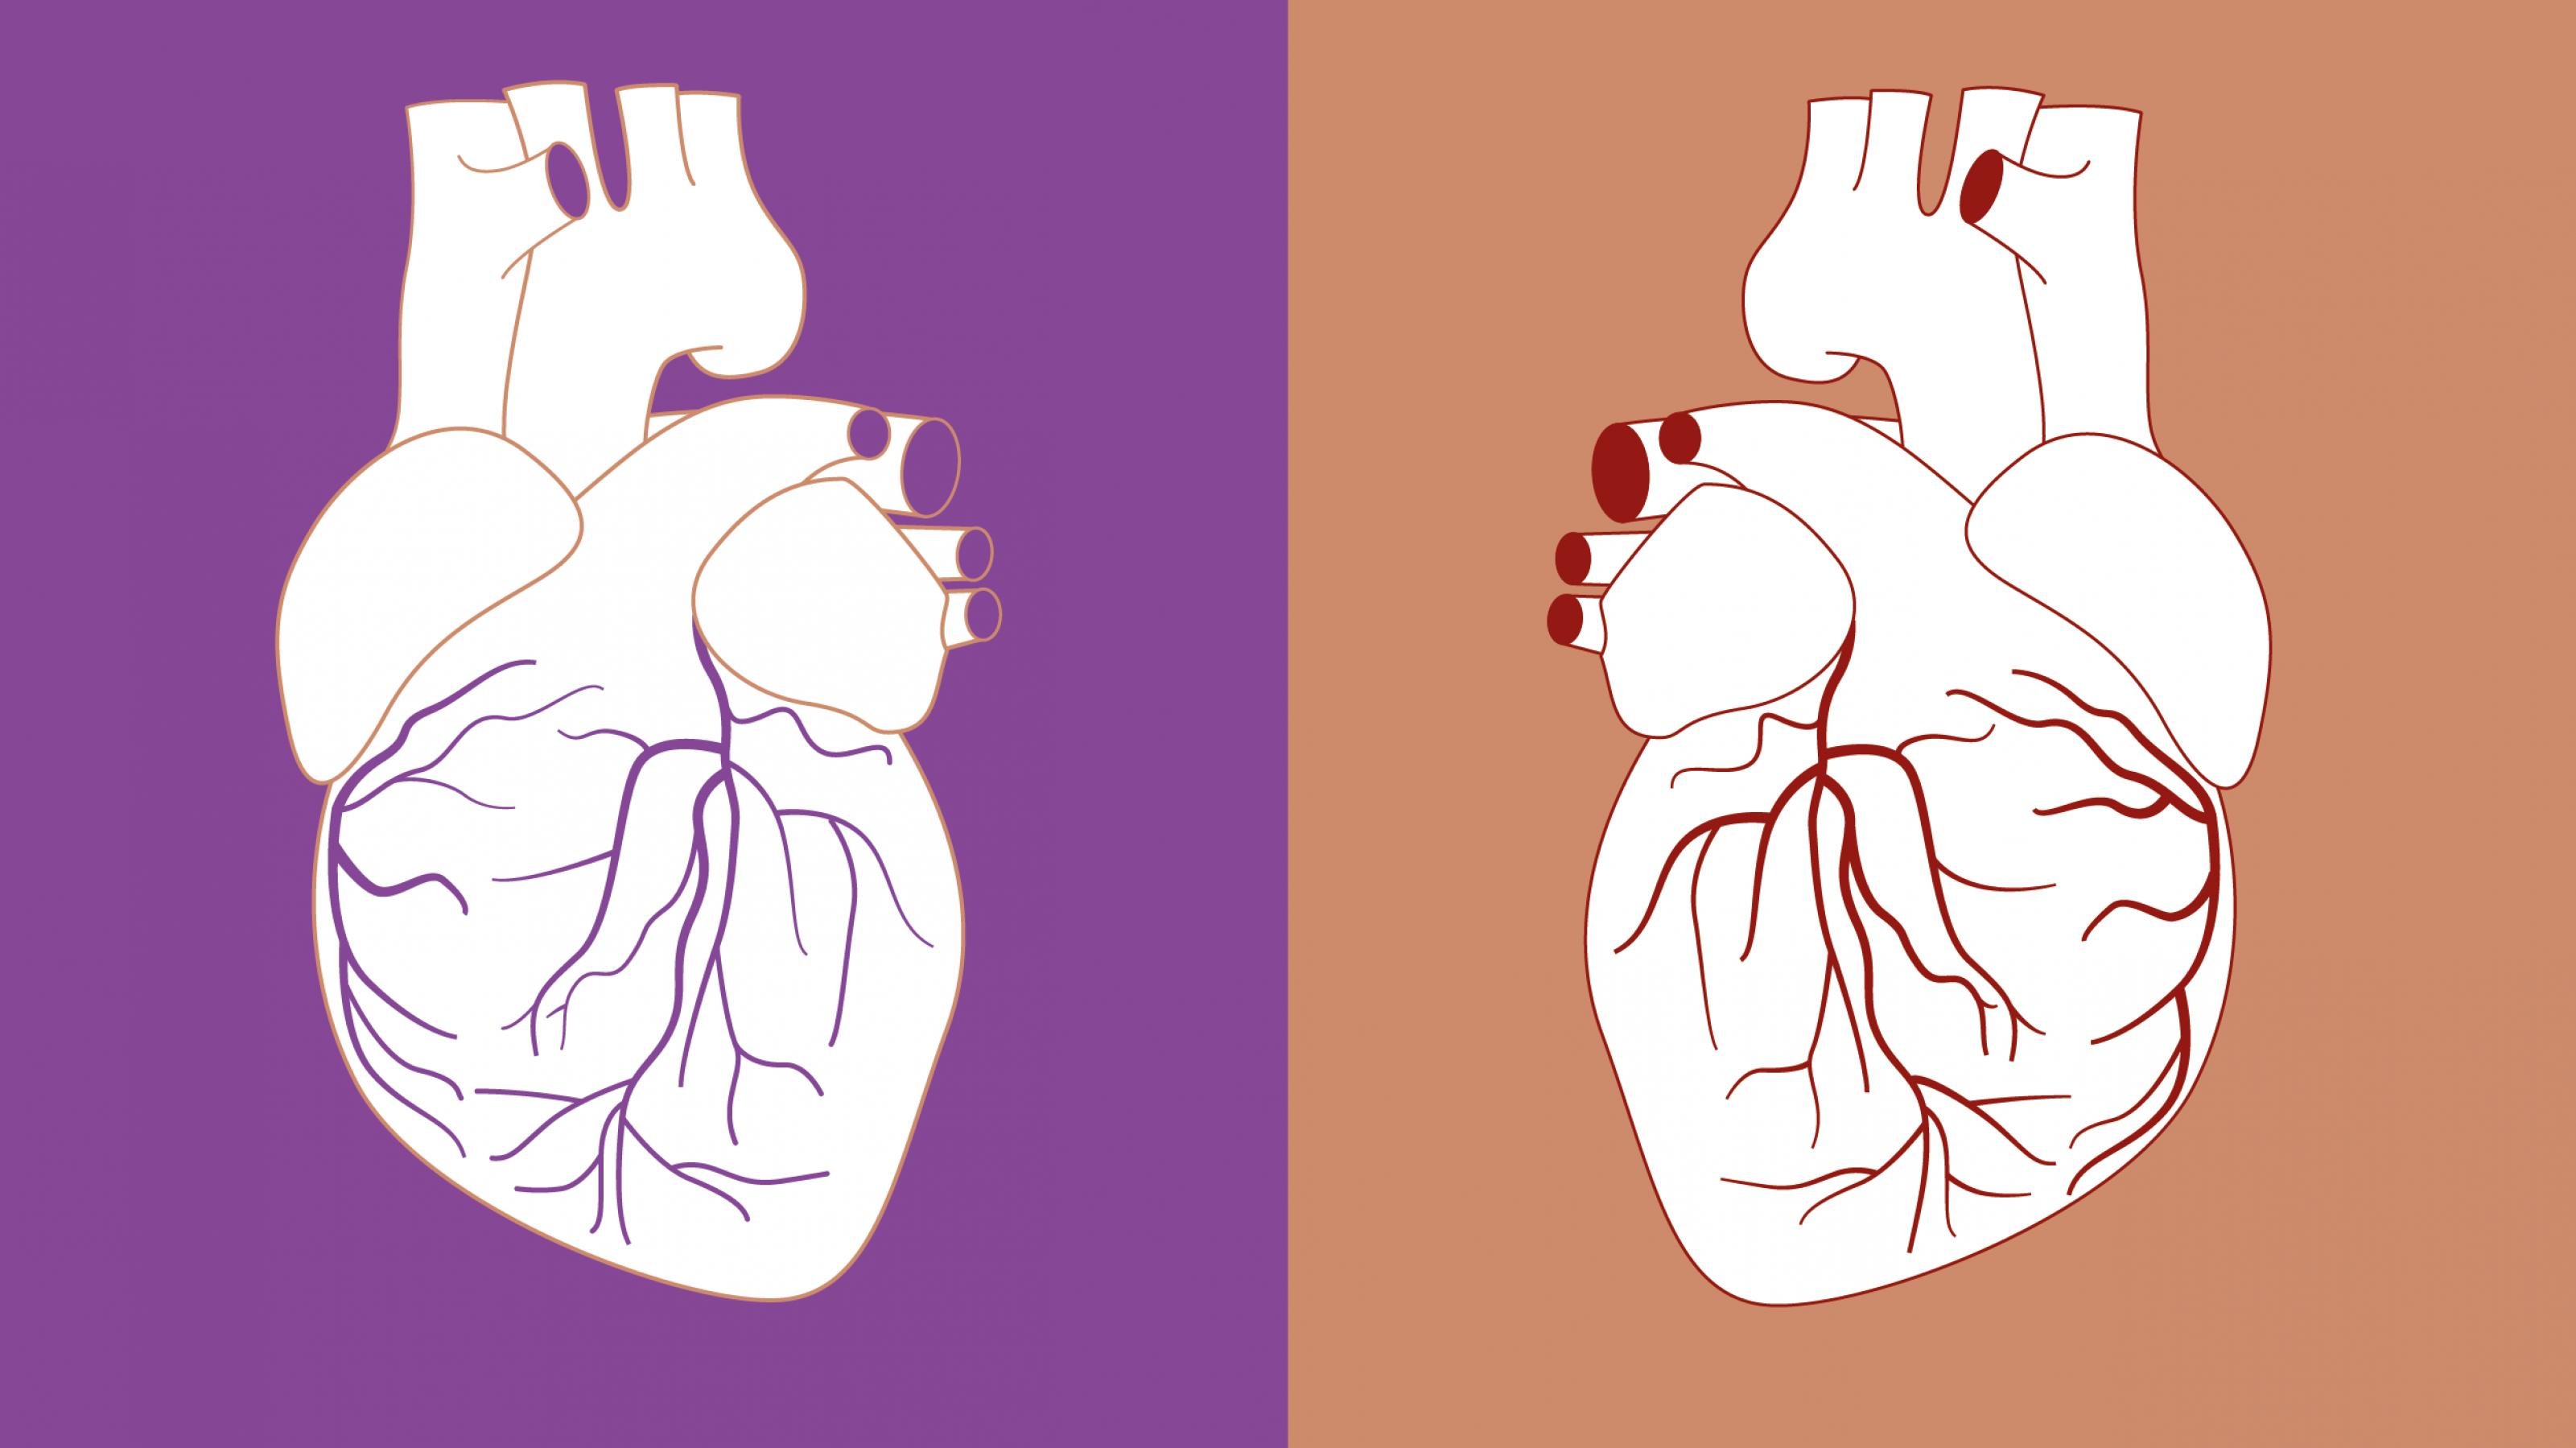 Das Bild ist in eine linke und eine rechte Hälfte geteilt. Links ist eine Zeichnung eines menschlichen Herzens vor einem lila Hintergrund zu sehen. Rechts ist die gleiche Zeichnung spiegelverkehrt vor einem beigen Hintergrund zu sehen.